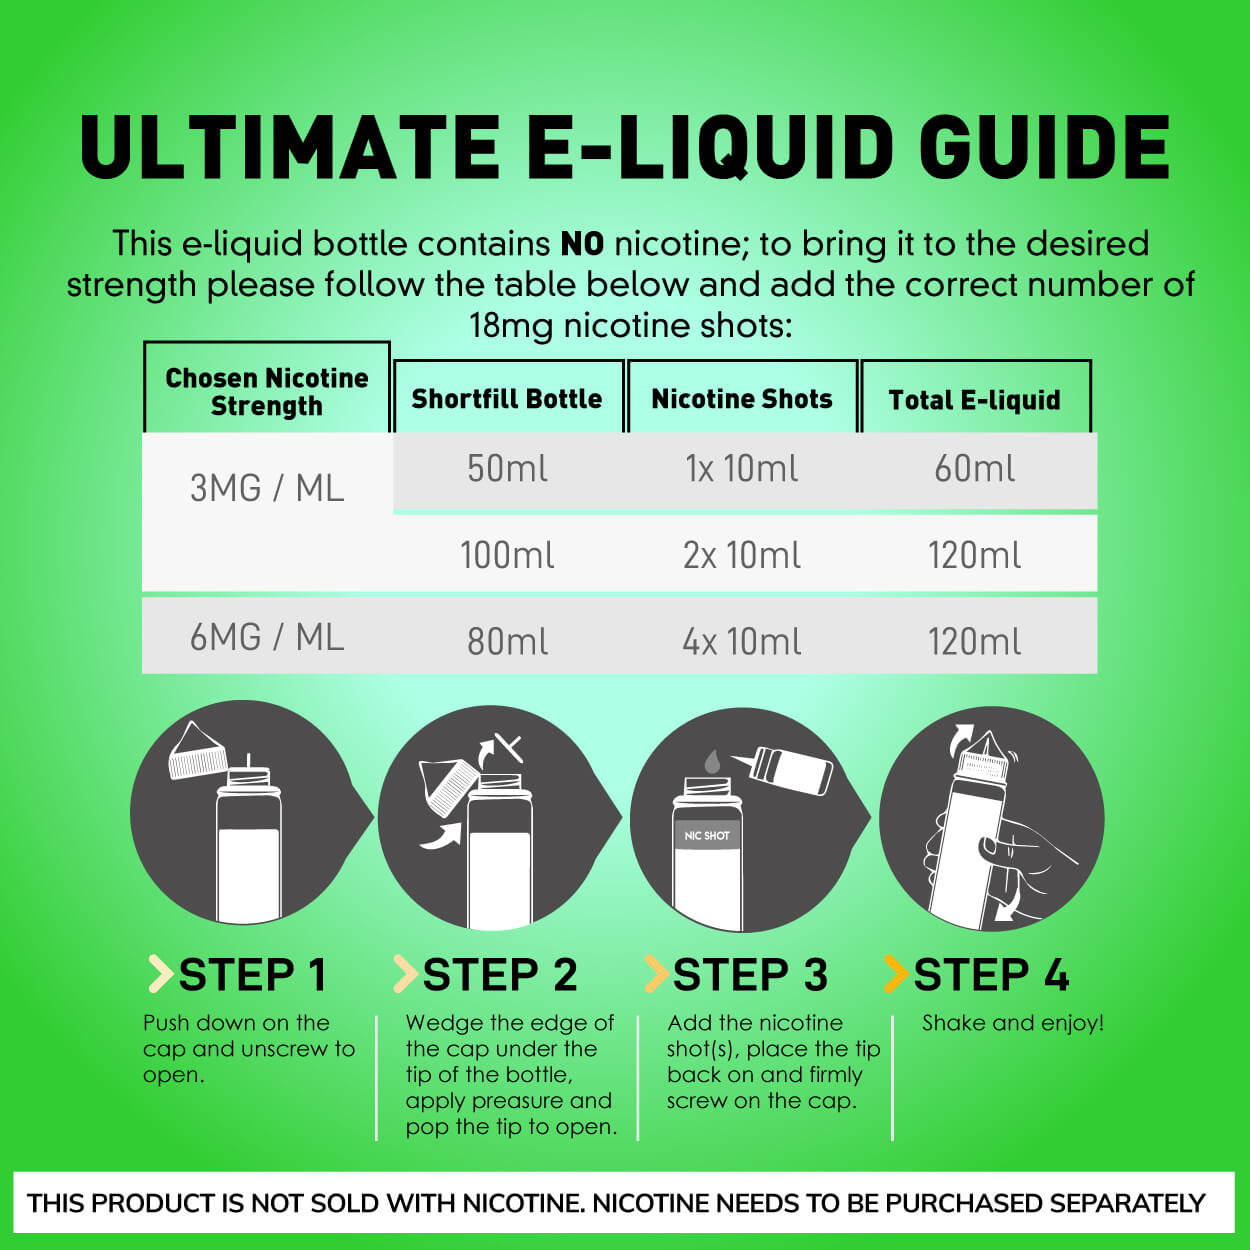 Lime Mojito Ice 70/30 E-Liquid (Limetten-Mojito-Eis) | Fantasi